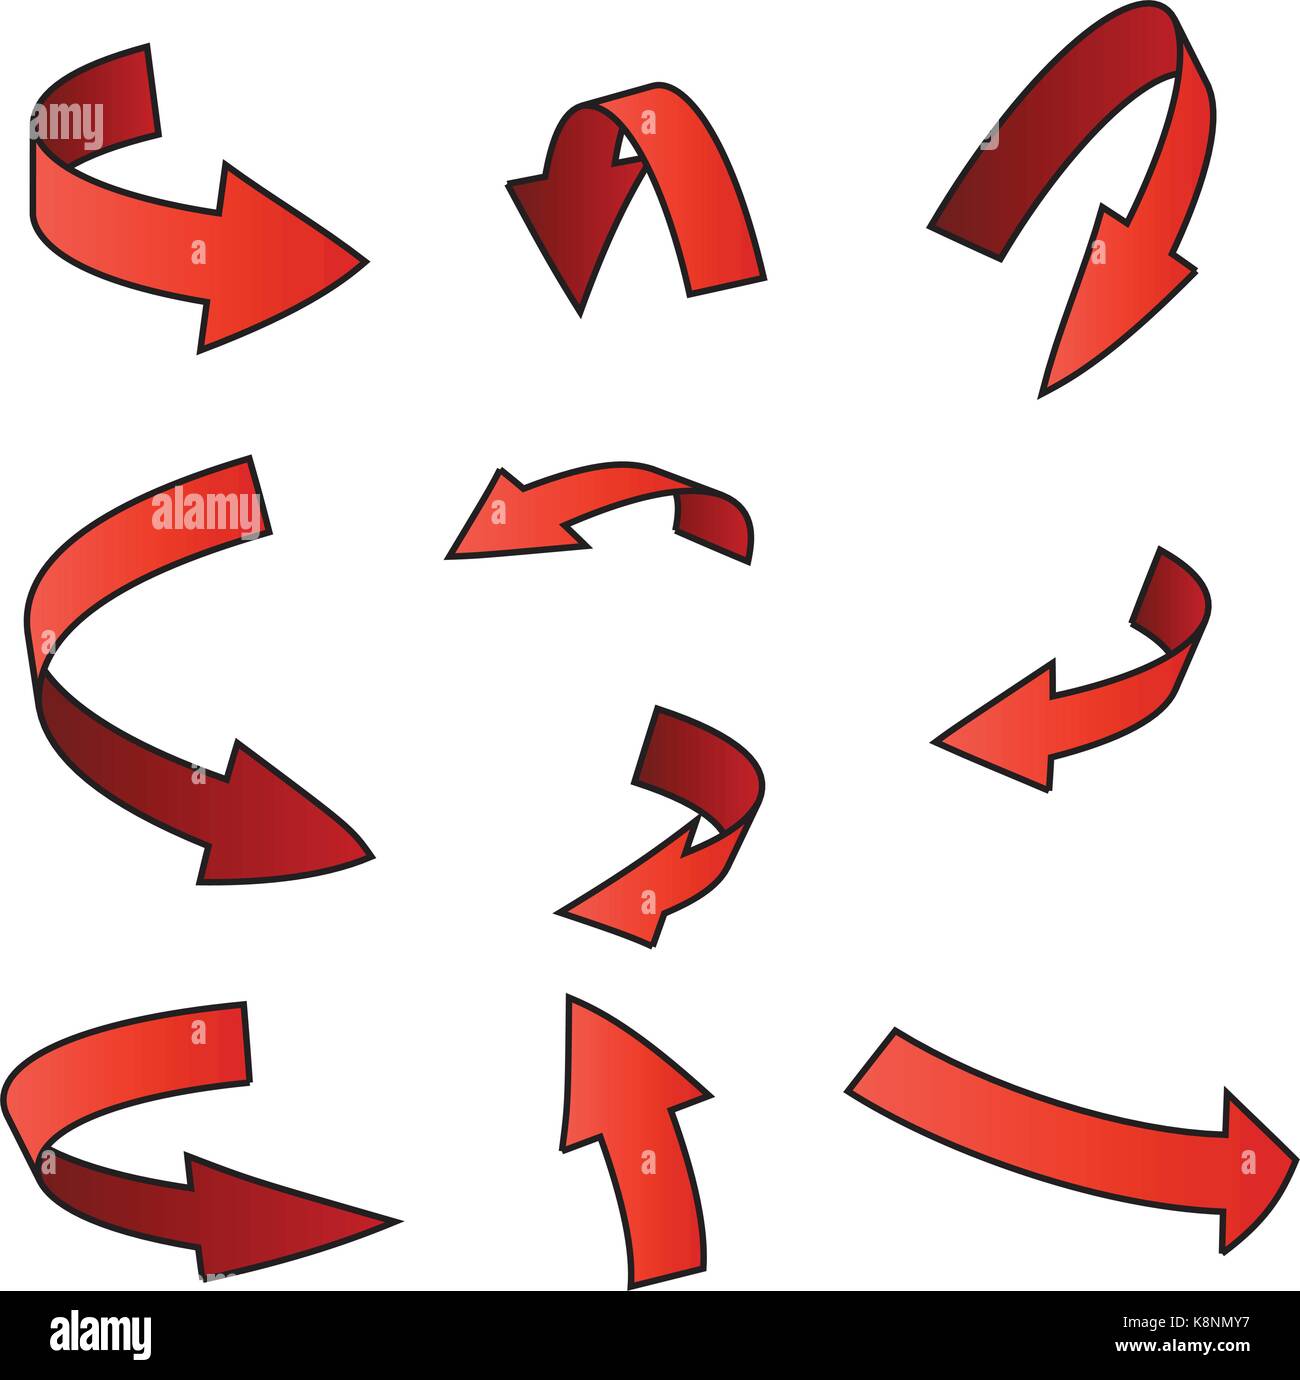 Roter Pfeil symbol, gebogene Symbol Business Konzept gesetzt. Vector Illustration auf weißem Hintergrund. Stock Vektor